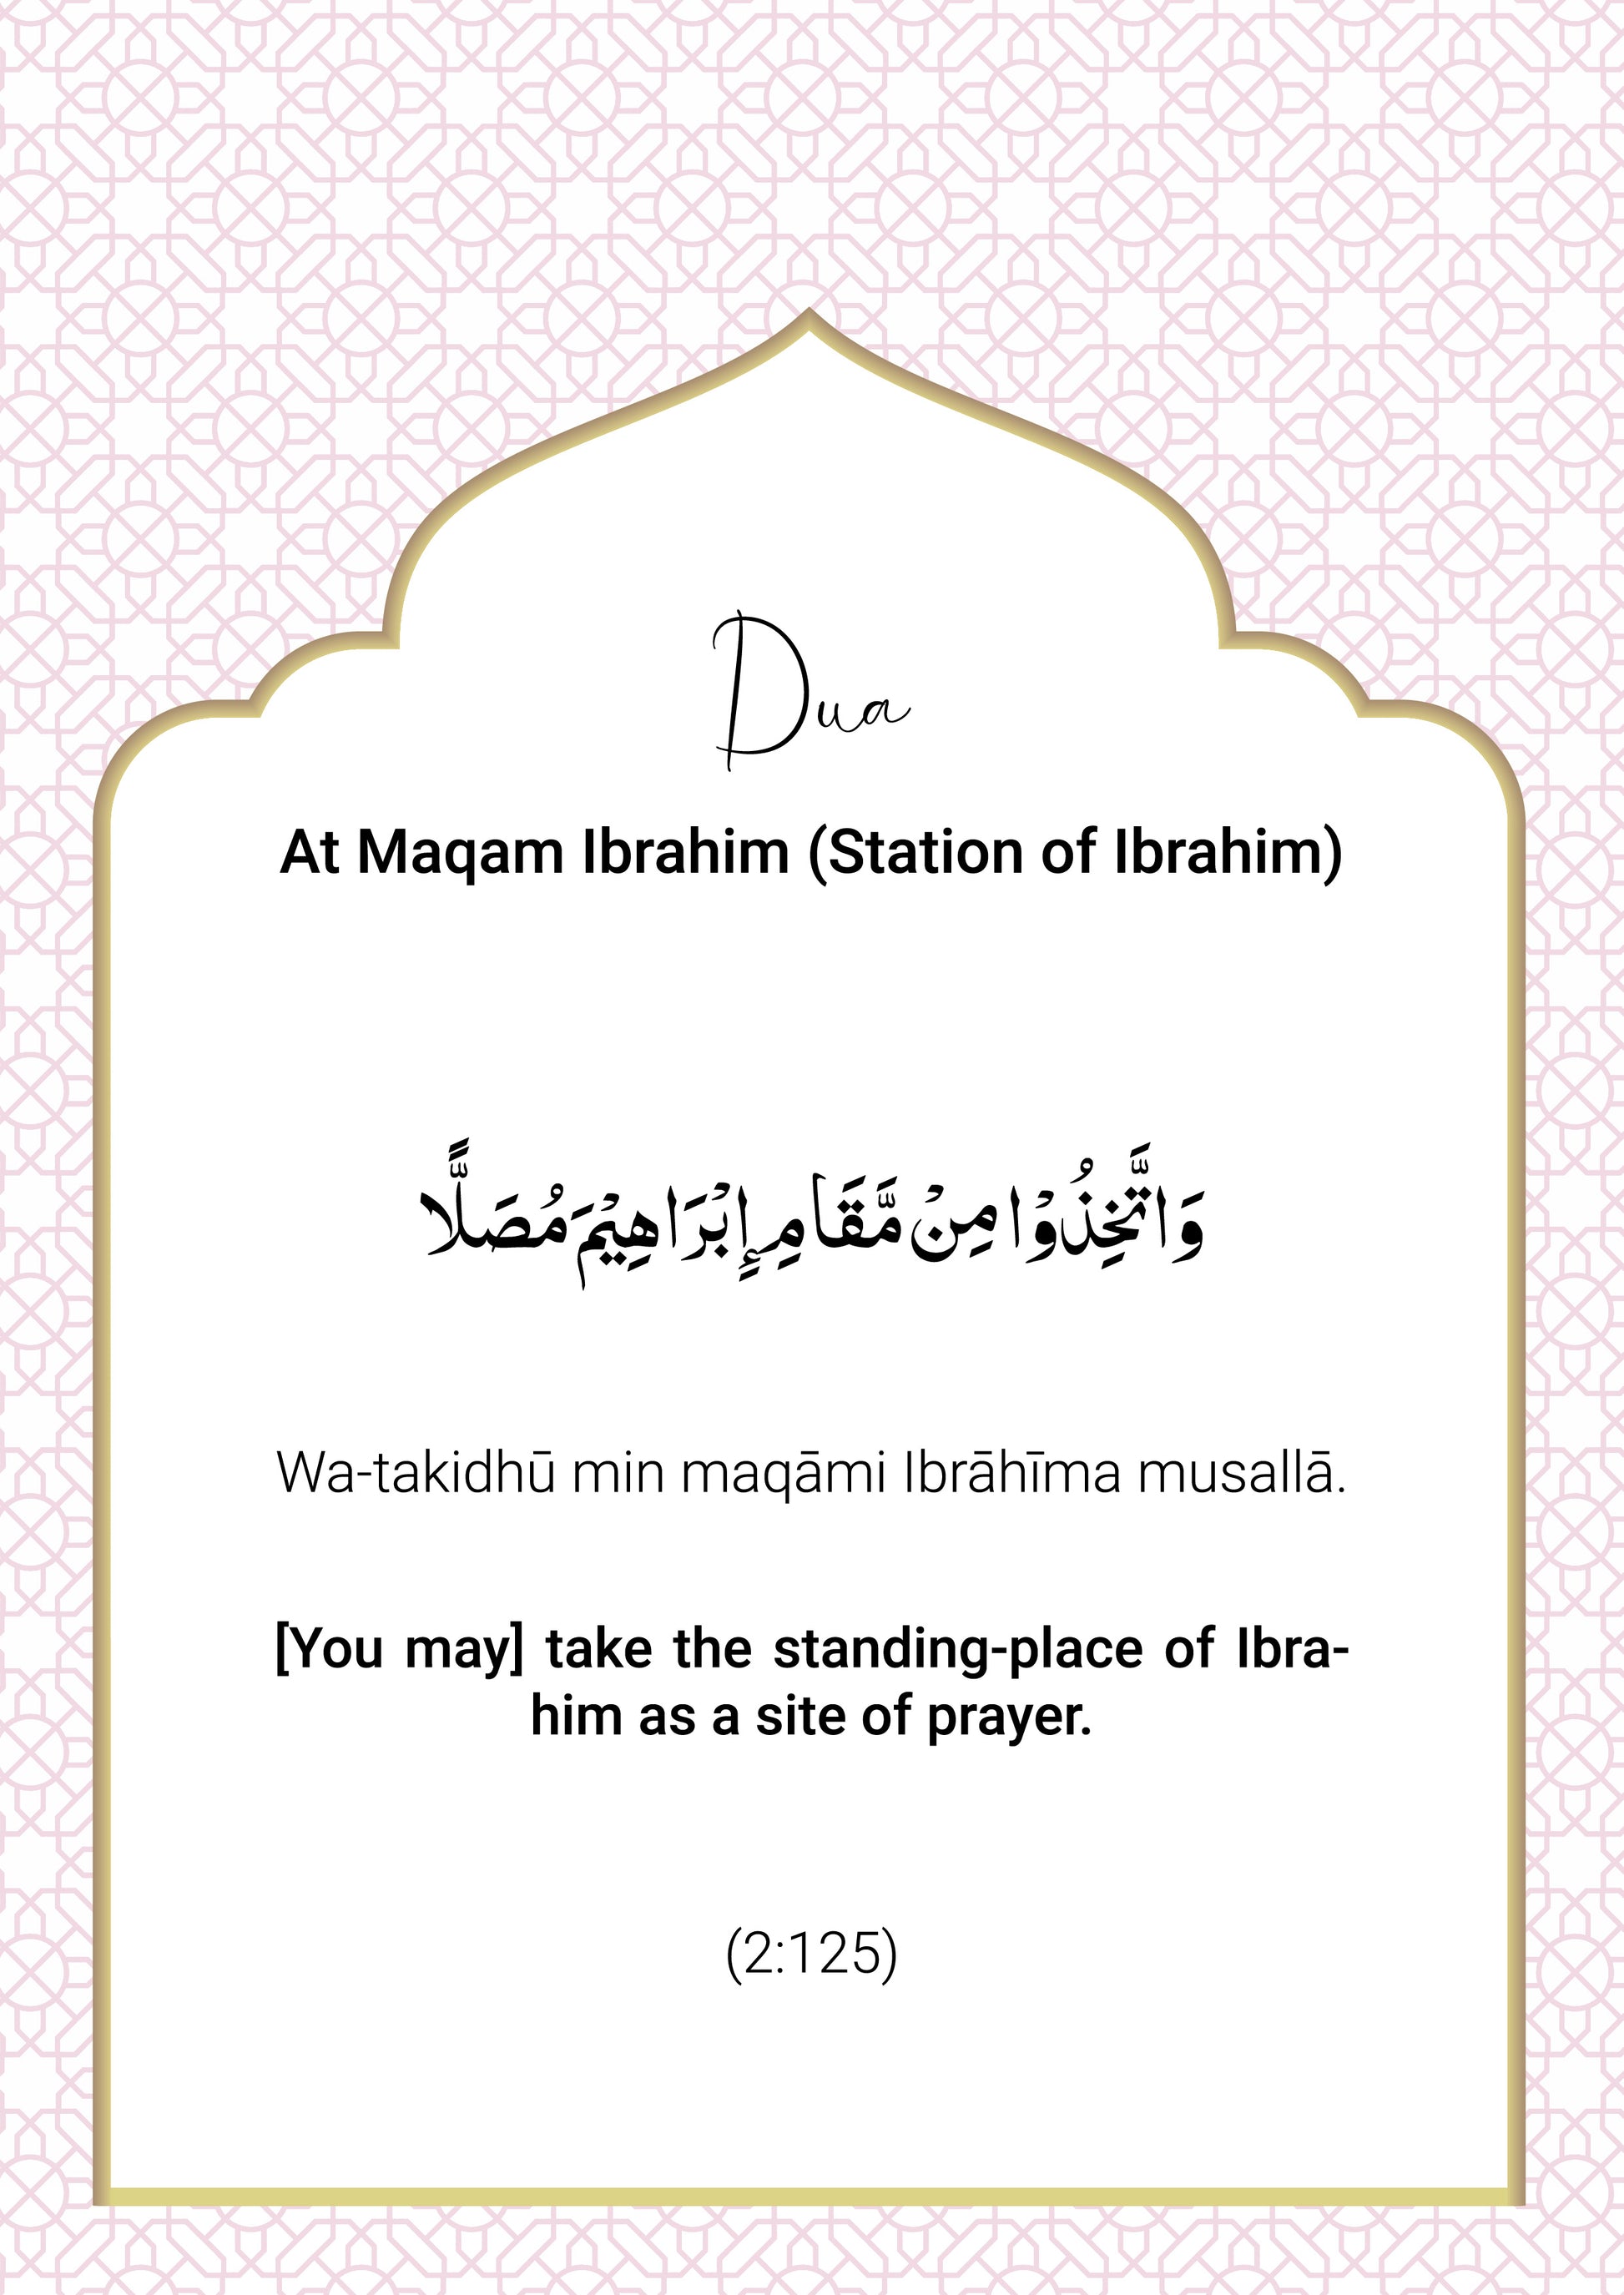 Prayers during Hajj or Umrah